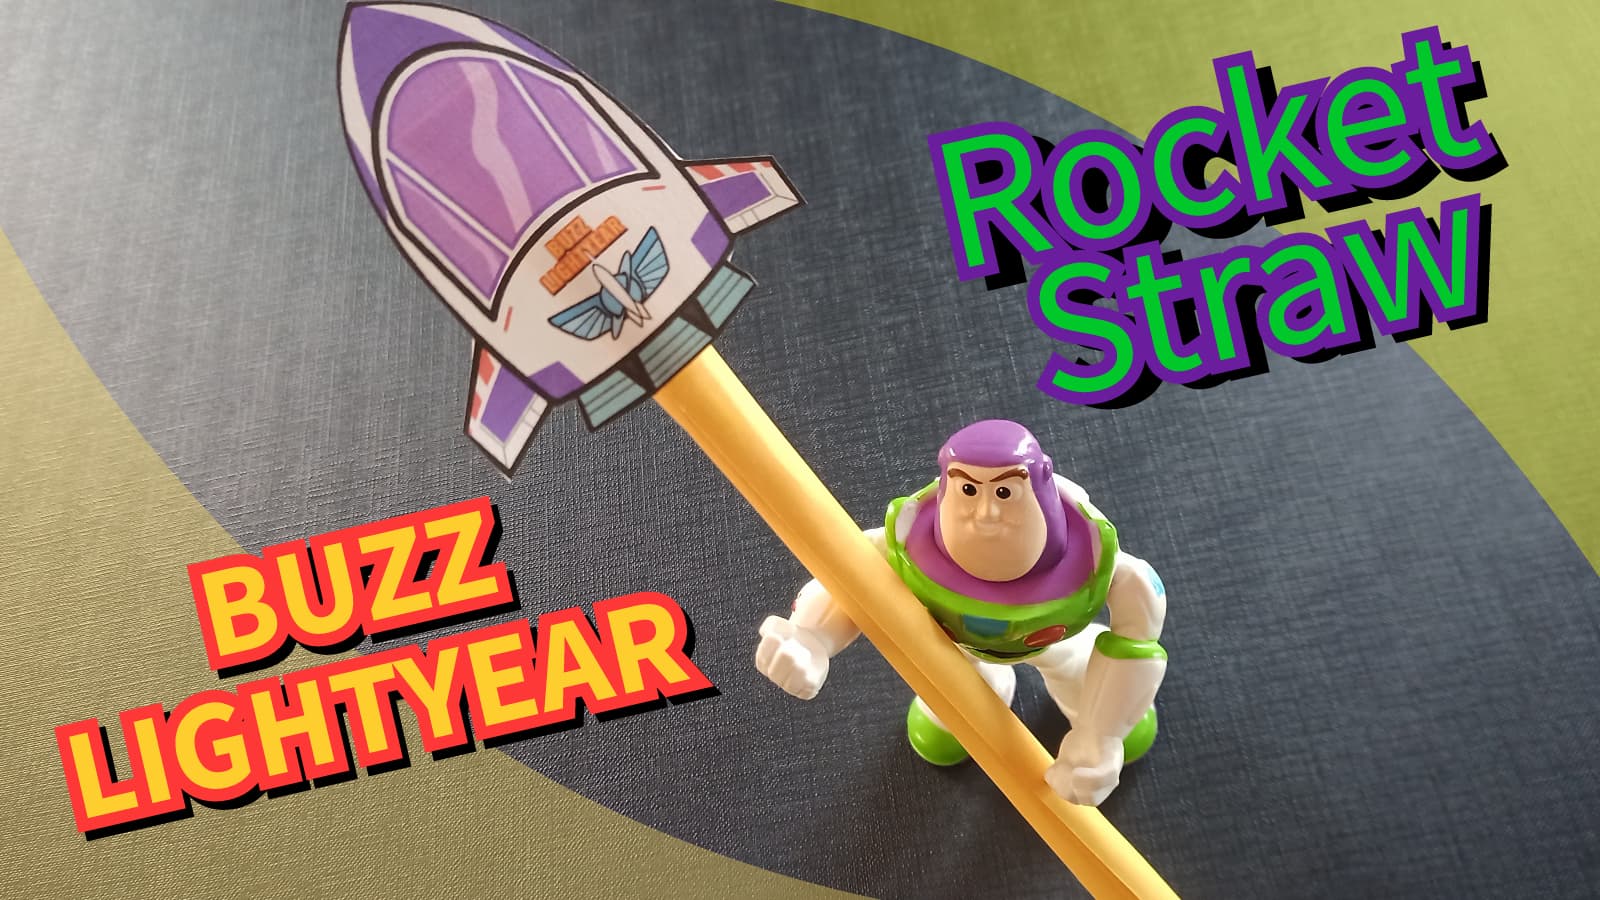 Créer une Rocket Straw de Buzz Lightyear